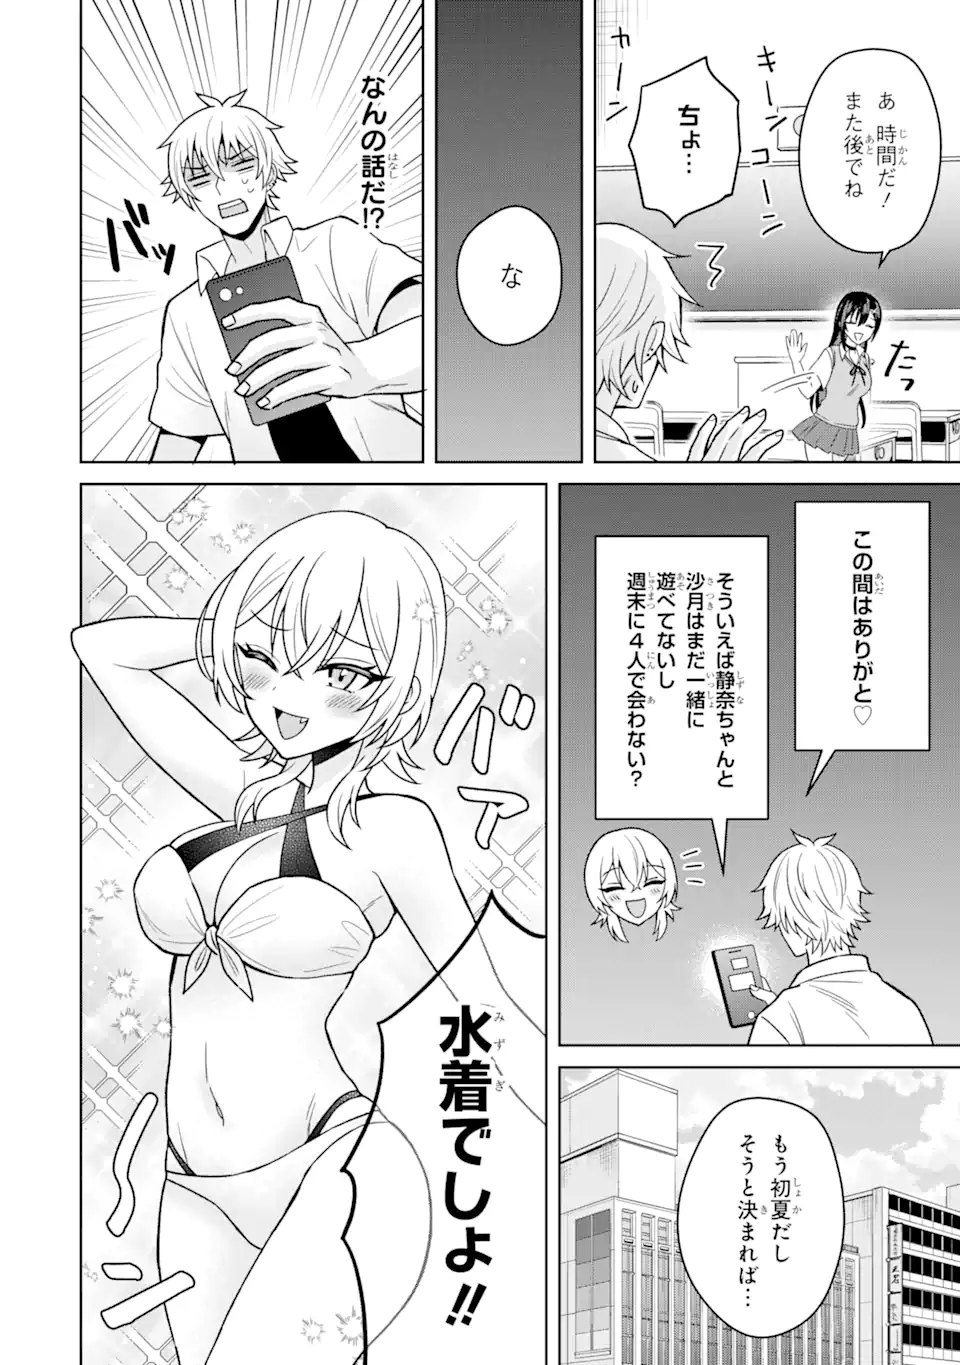 Netorare Manga no Kuzu Otoko ni Tensei Shita Hazu ga Heroine ga Yottekuru Ken - Chapter 13.1 - Page 2